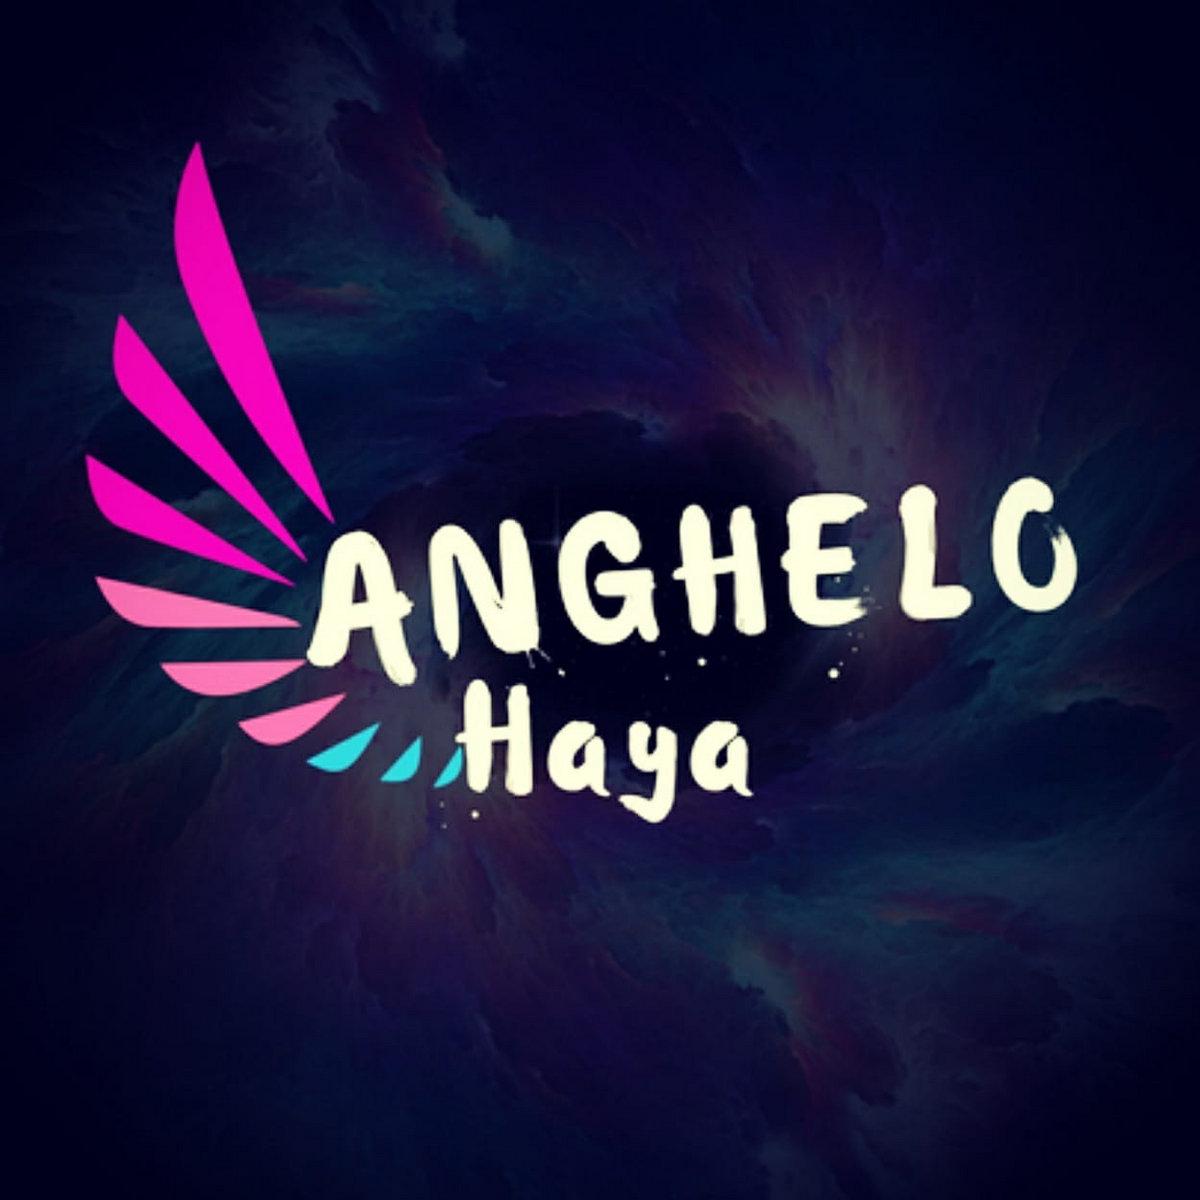 Anghelo Haya